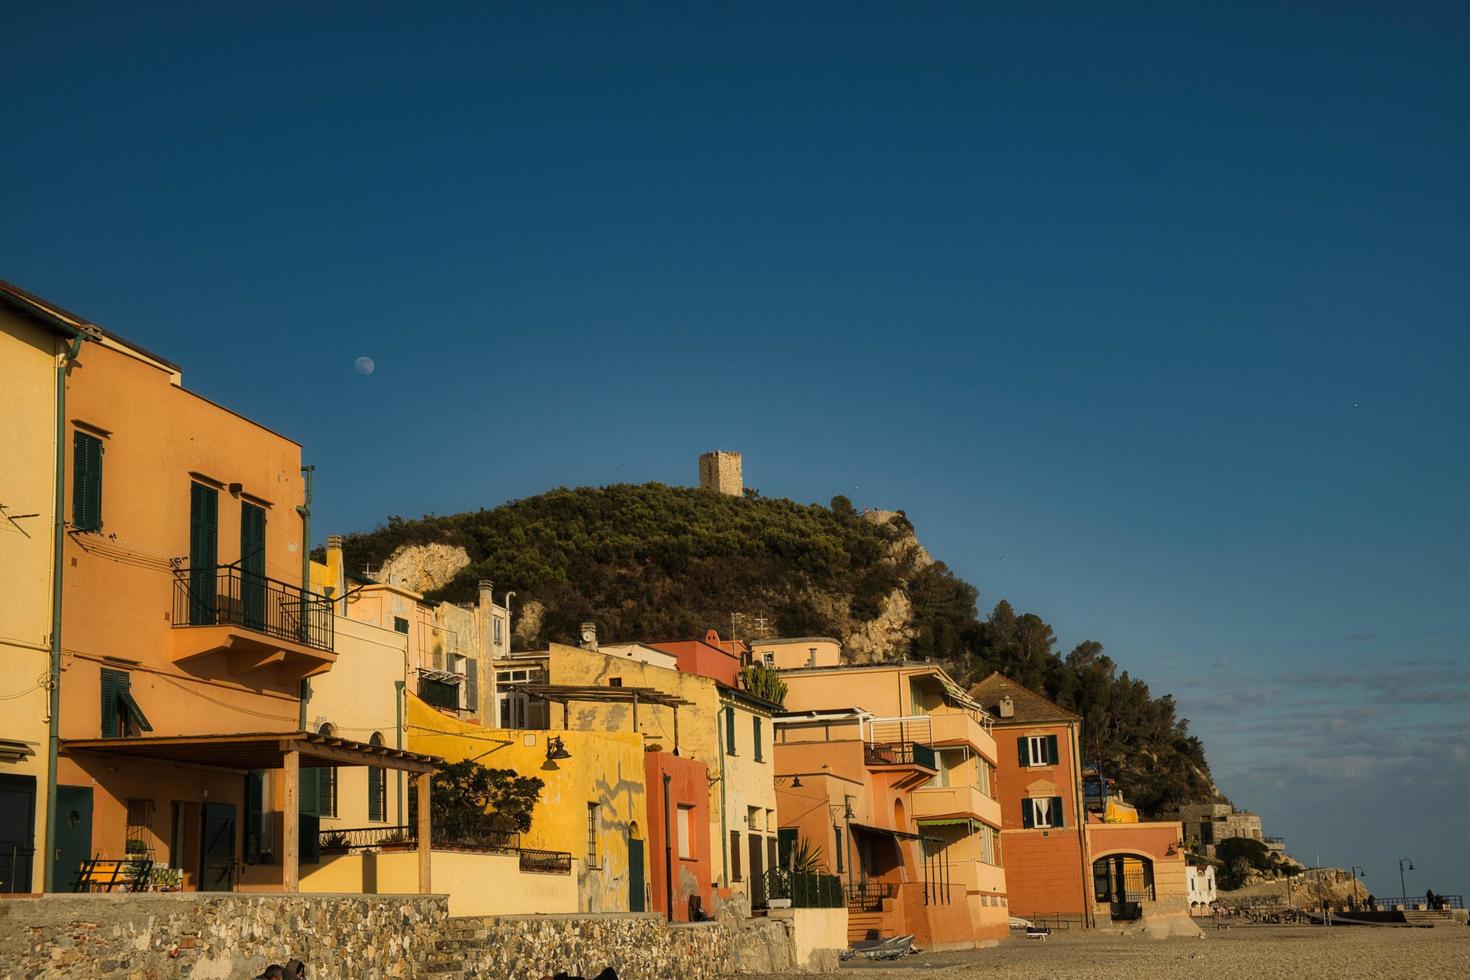 le village étrusque de varigotti avec ses maisons colorées jaunes caractéristiques photographiées le long de la côte méditerranéenne photo